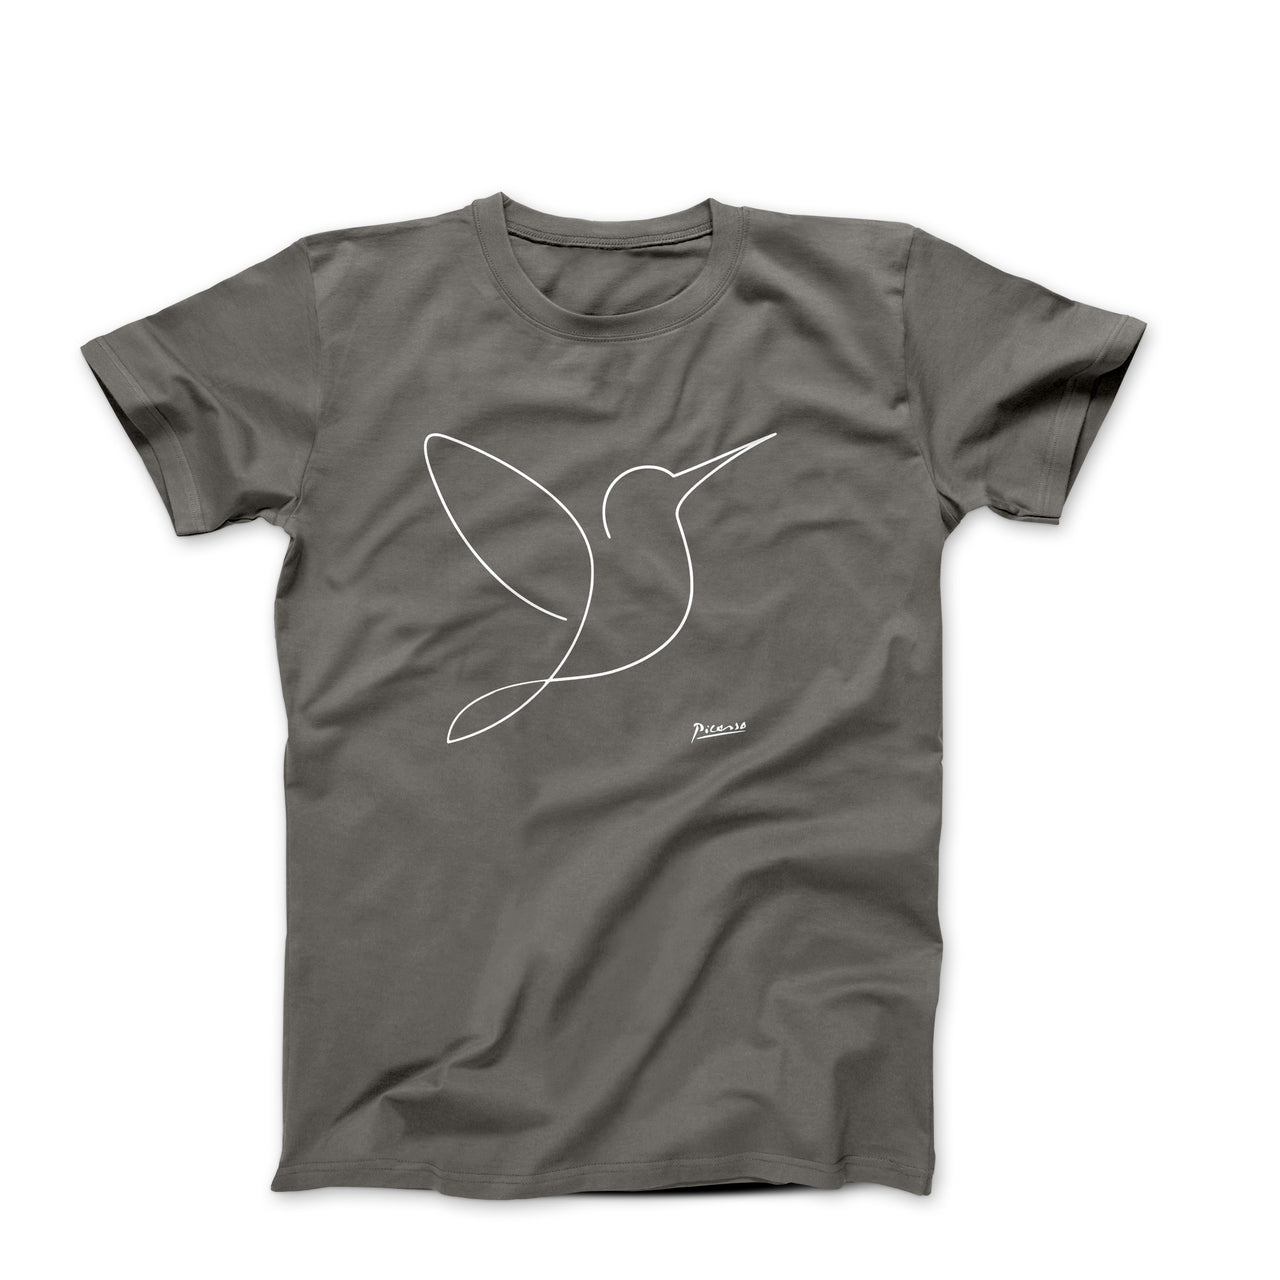 Pablo Picasso Bird Line Sketch T-shirt